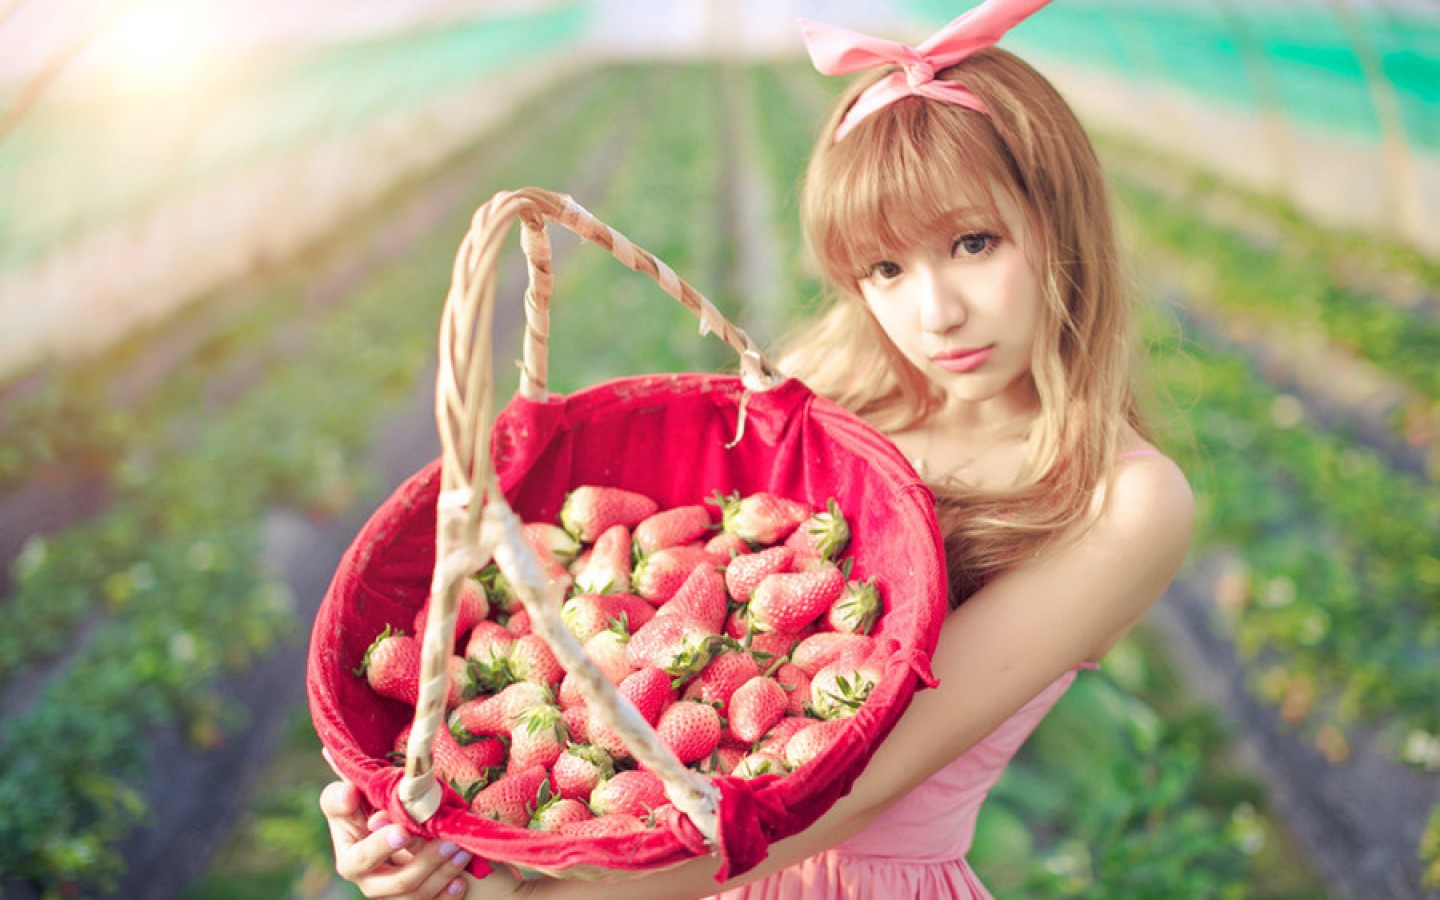 草莓白天捧著草莓的美女戶外手捧草莓攝影圖配圖背景圖桌布圖片免費下載 - Pngtree